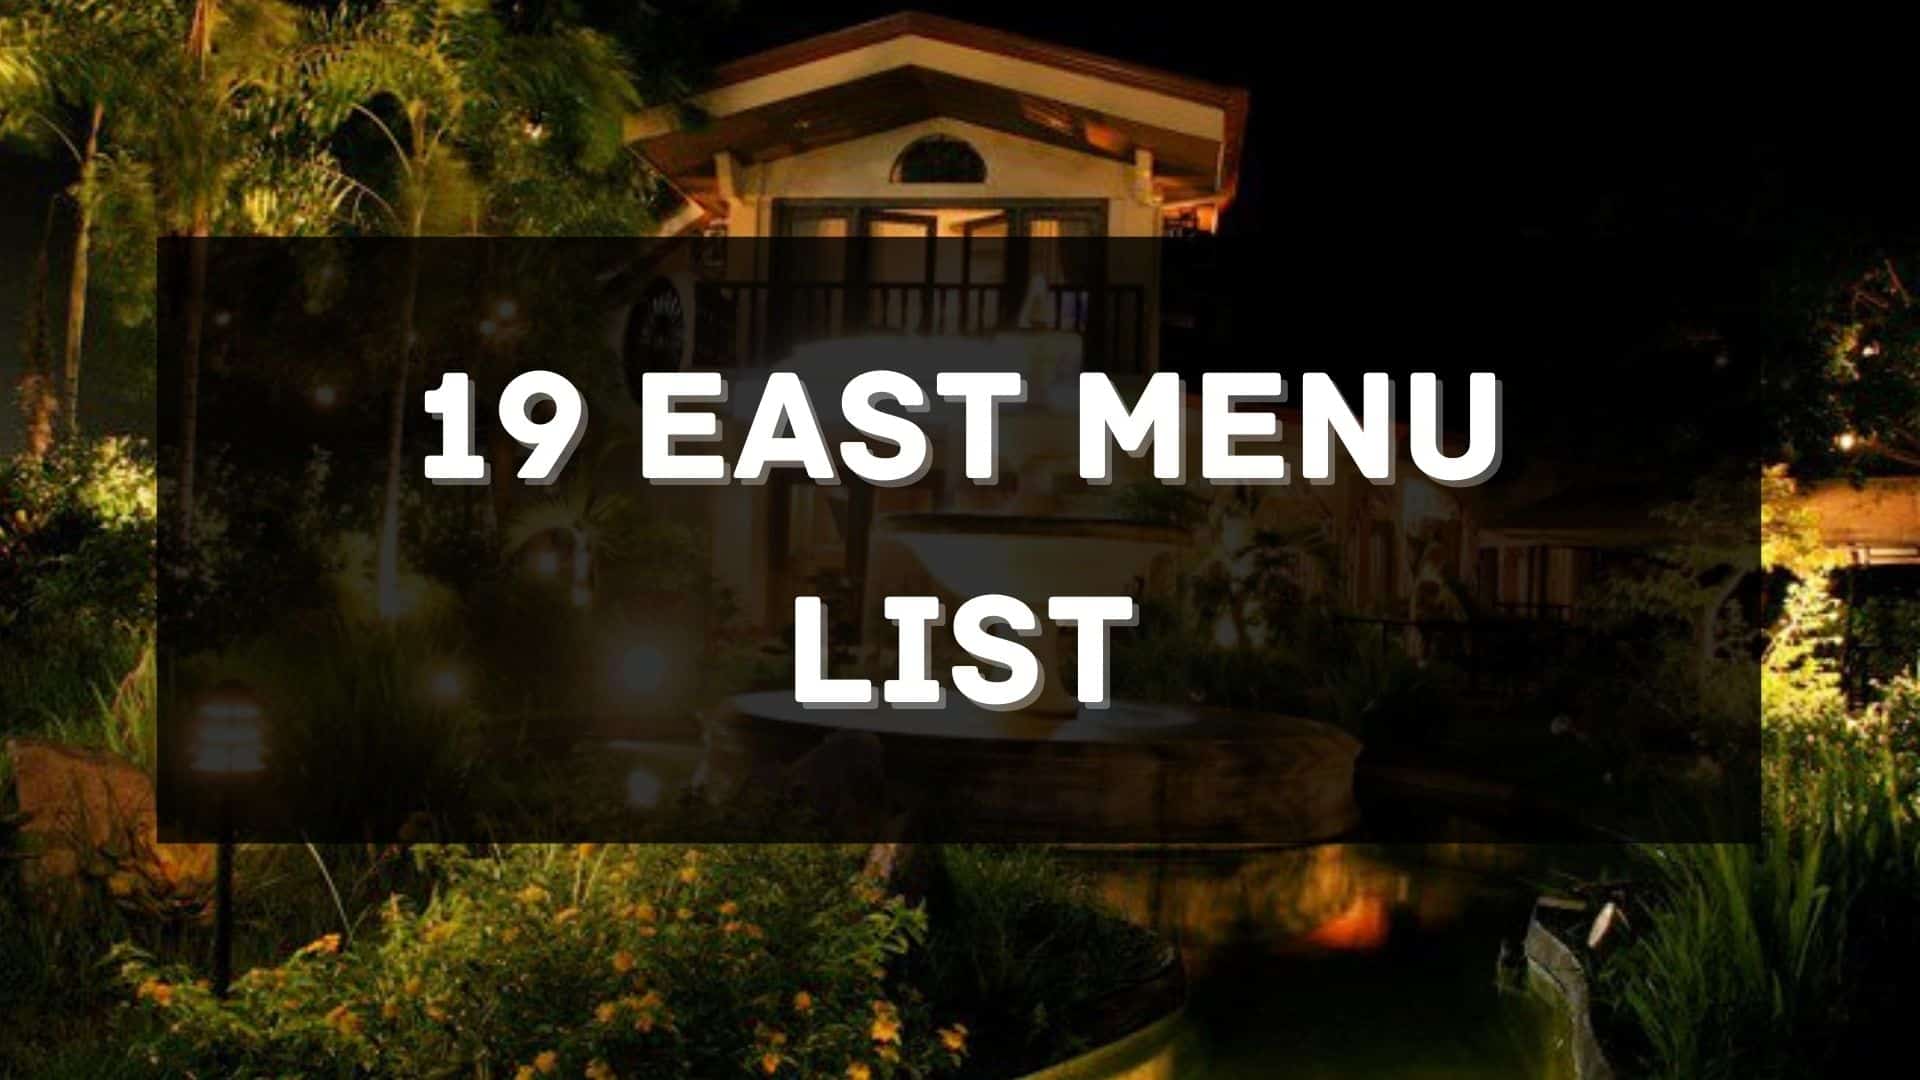 19 east menu prices philippines